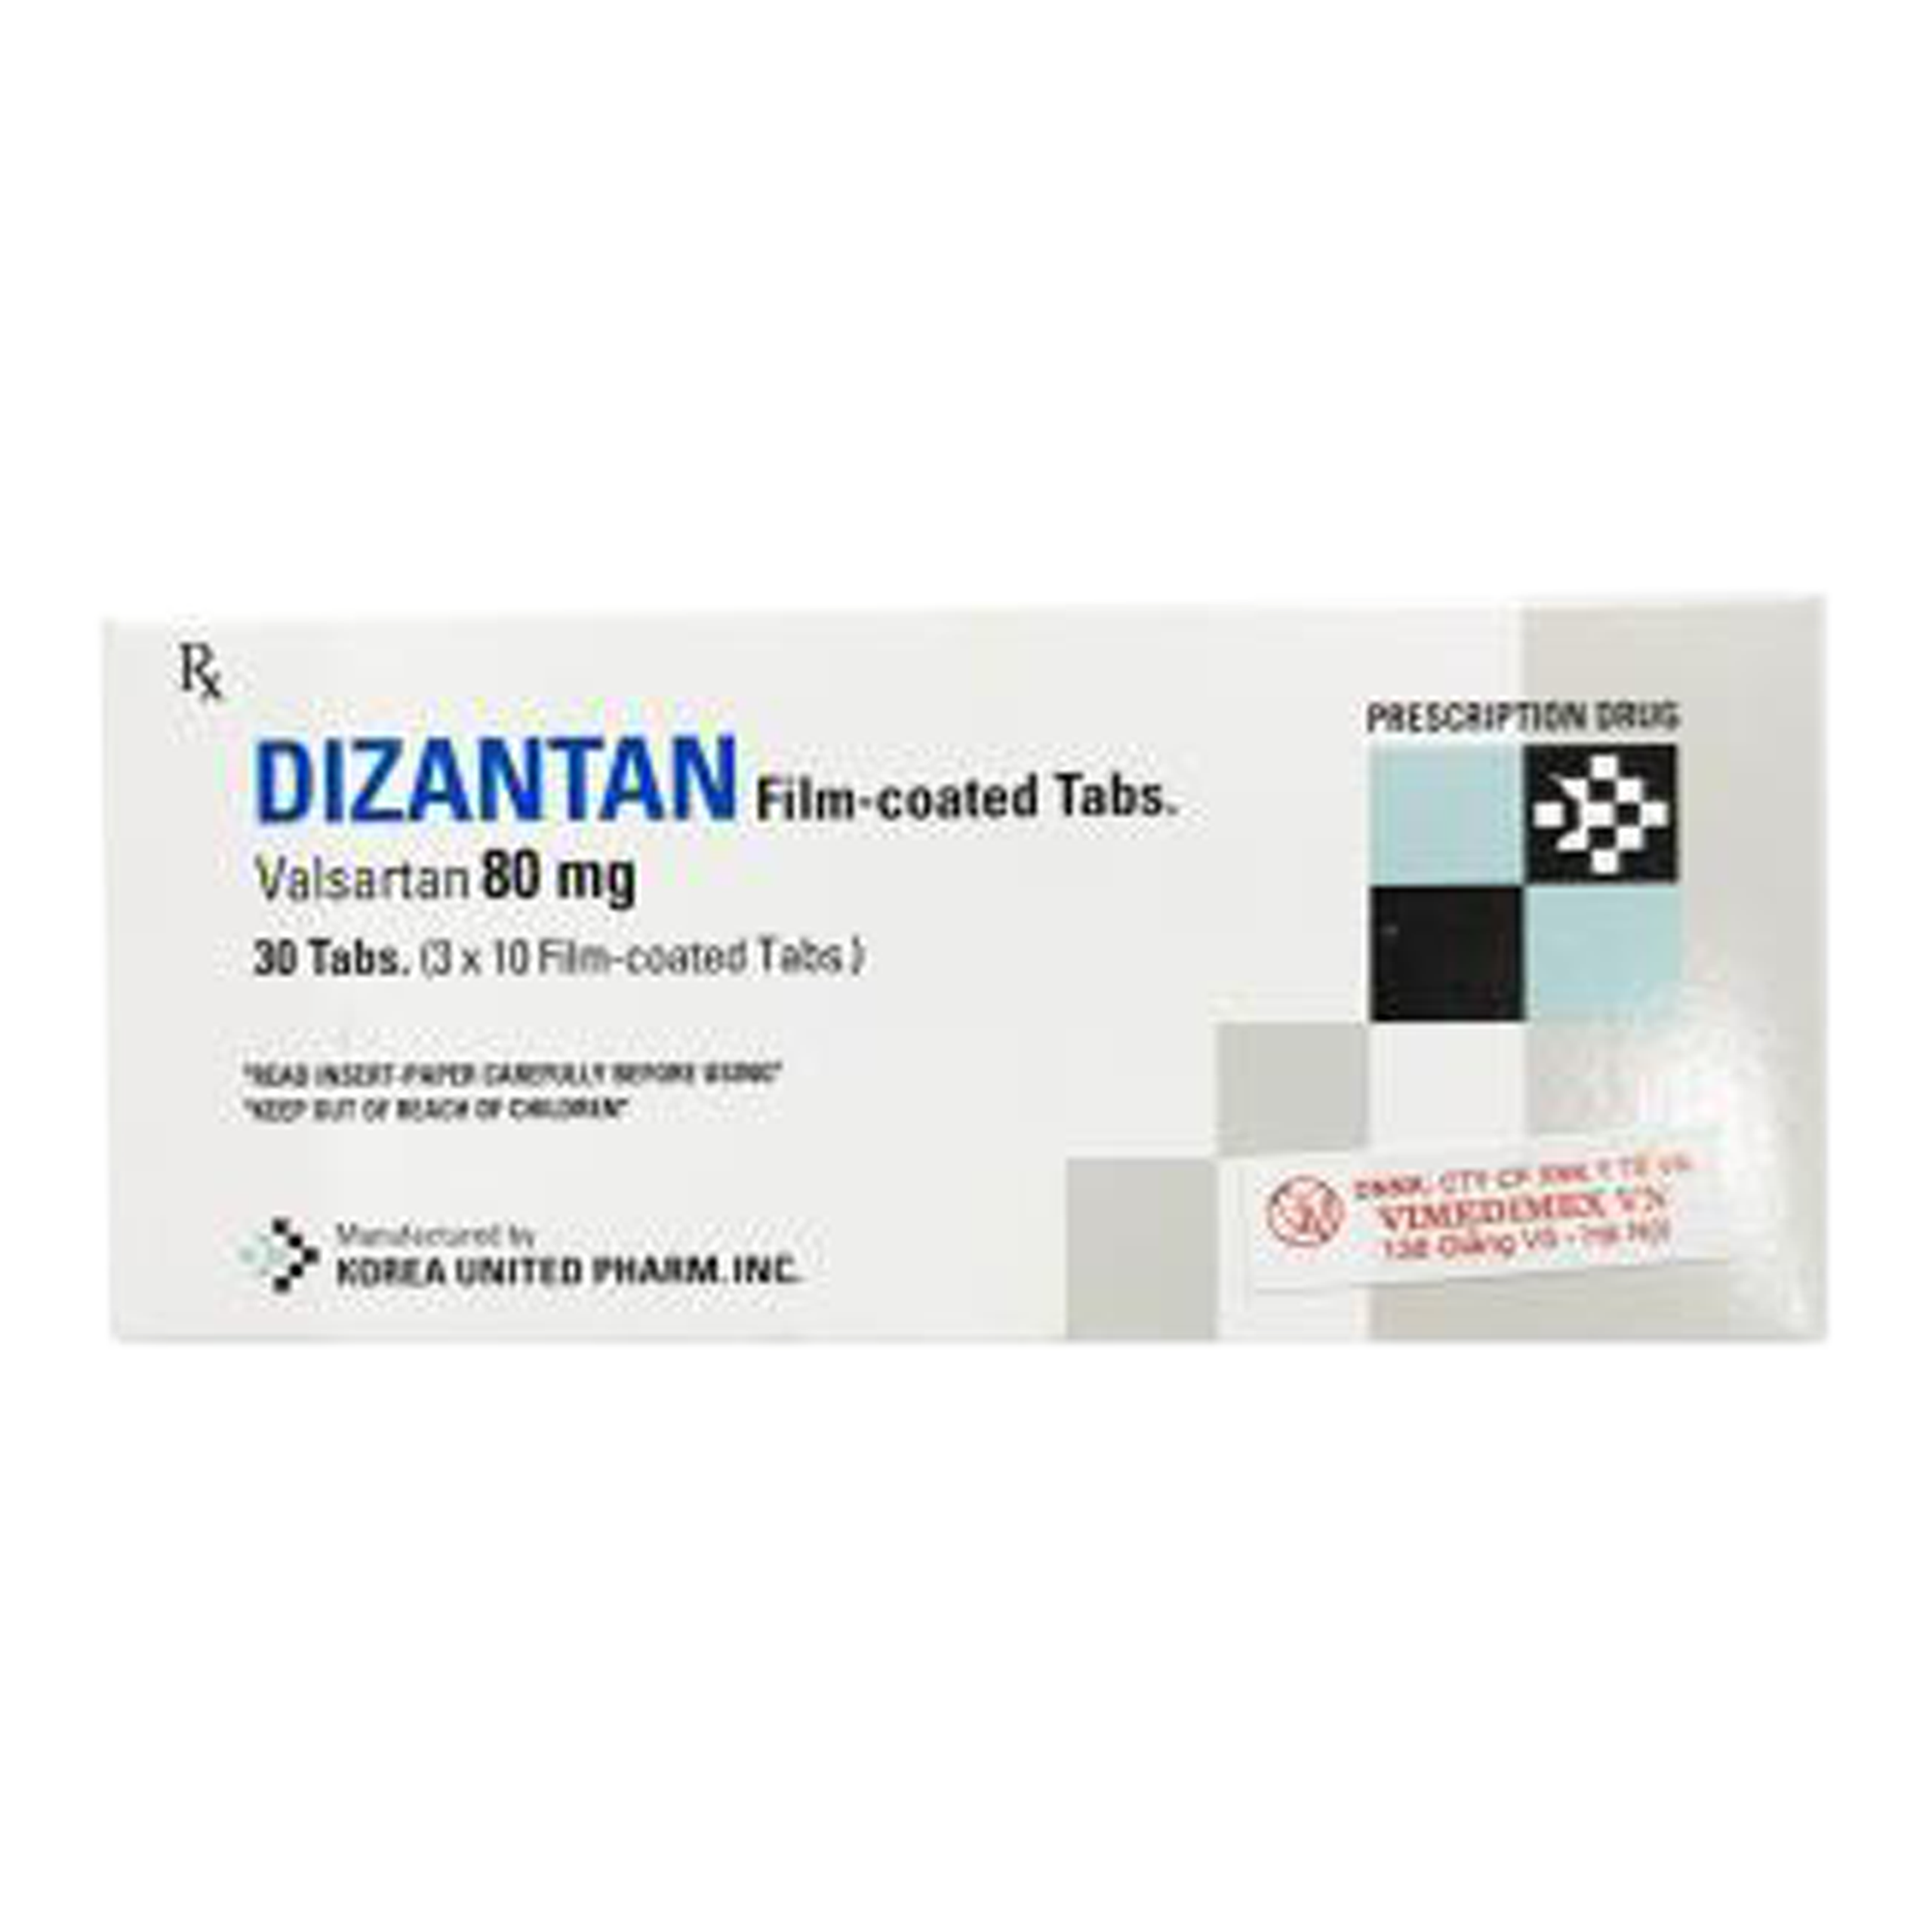 Thuốc Dizantan 80mg Korea United điều trị tăng huyết áp, suy tim, giảm tỷ lệ tử vong do tim mạch (3 vỉ x 10 viên)